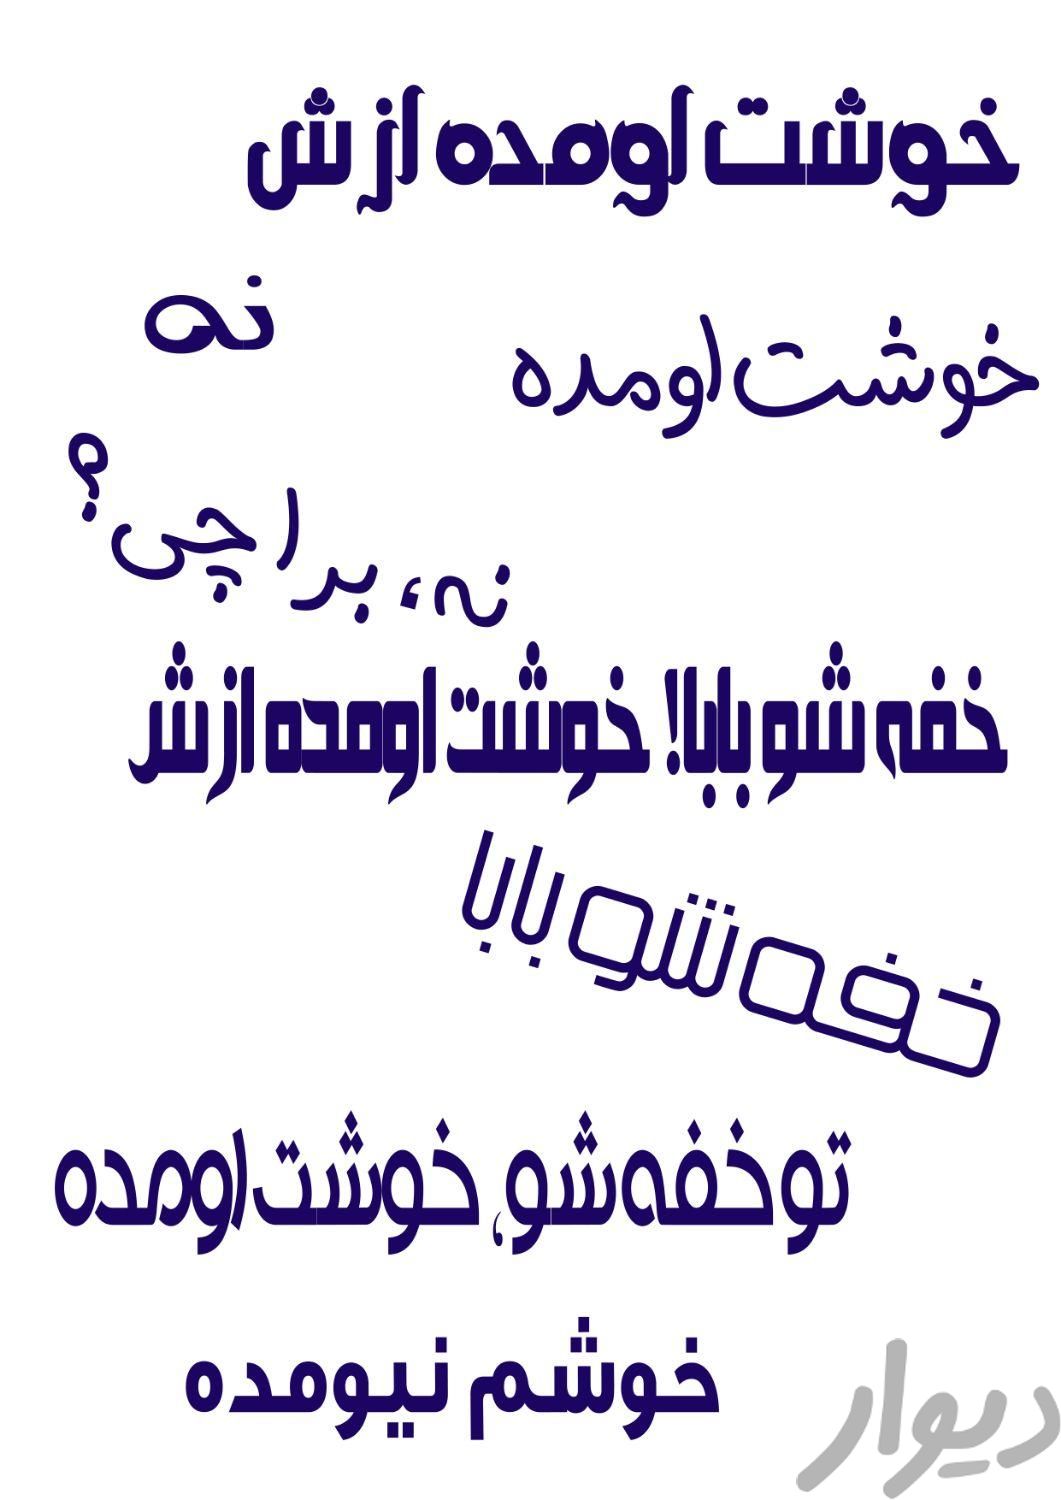 لیوان با چاپ عکس و متن دلخواه